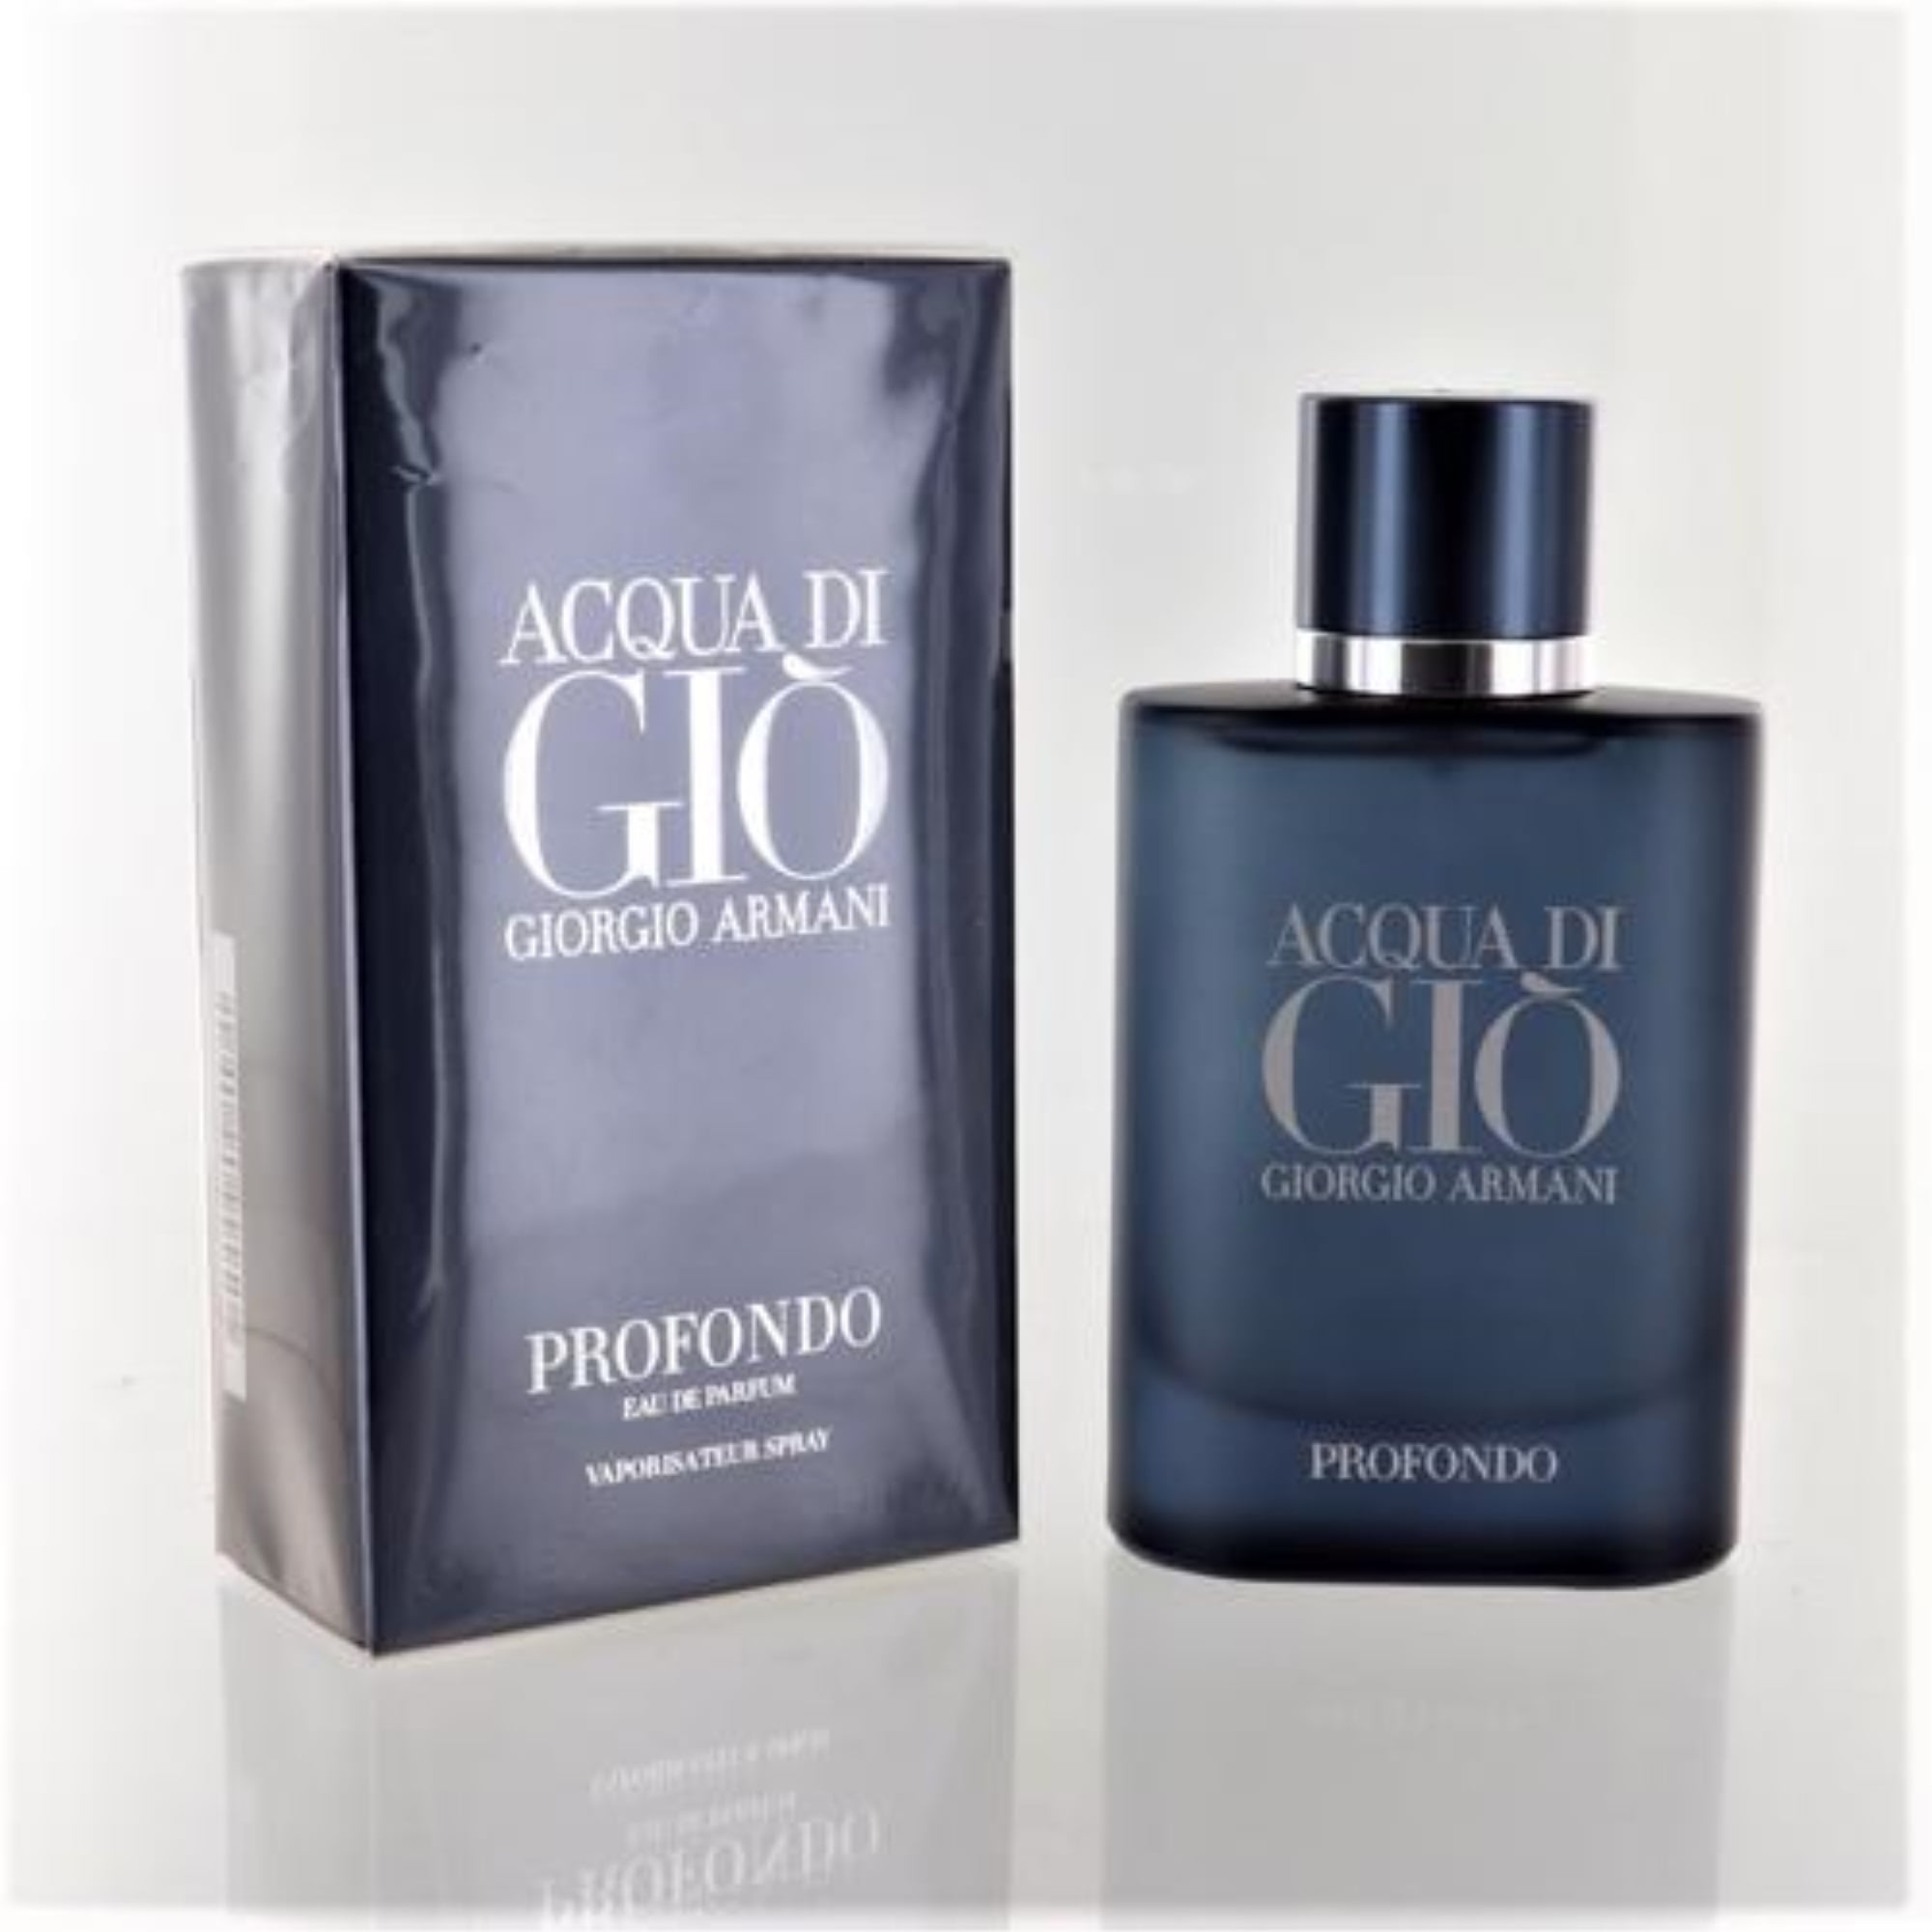 Giorgio Armani Acqua Di Gio Profondo Eau de Parfum, Cologne for Men,  Oz  Full Size 